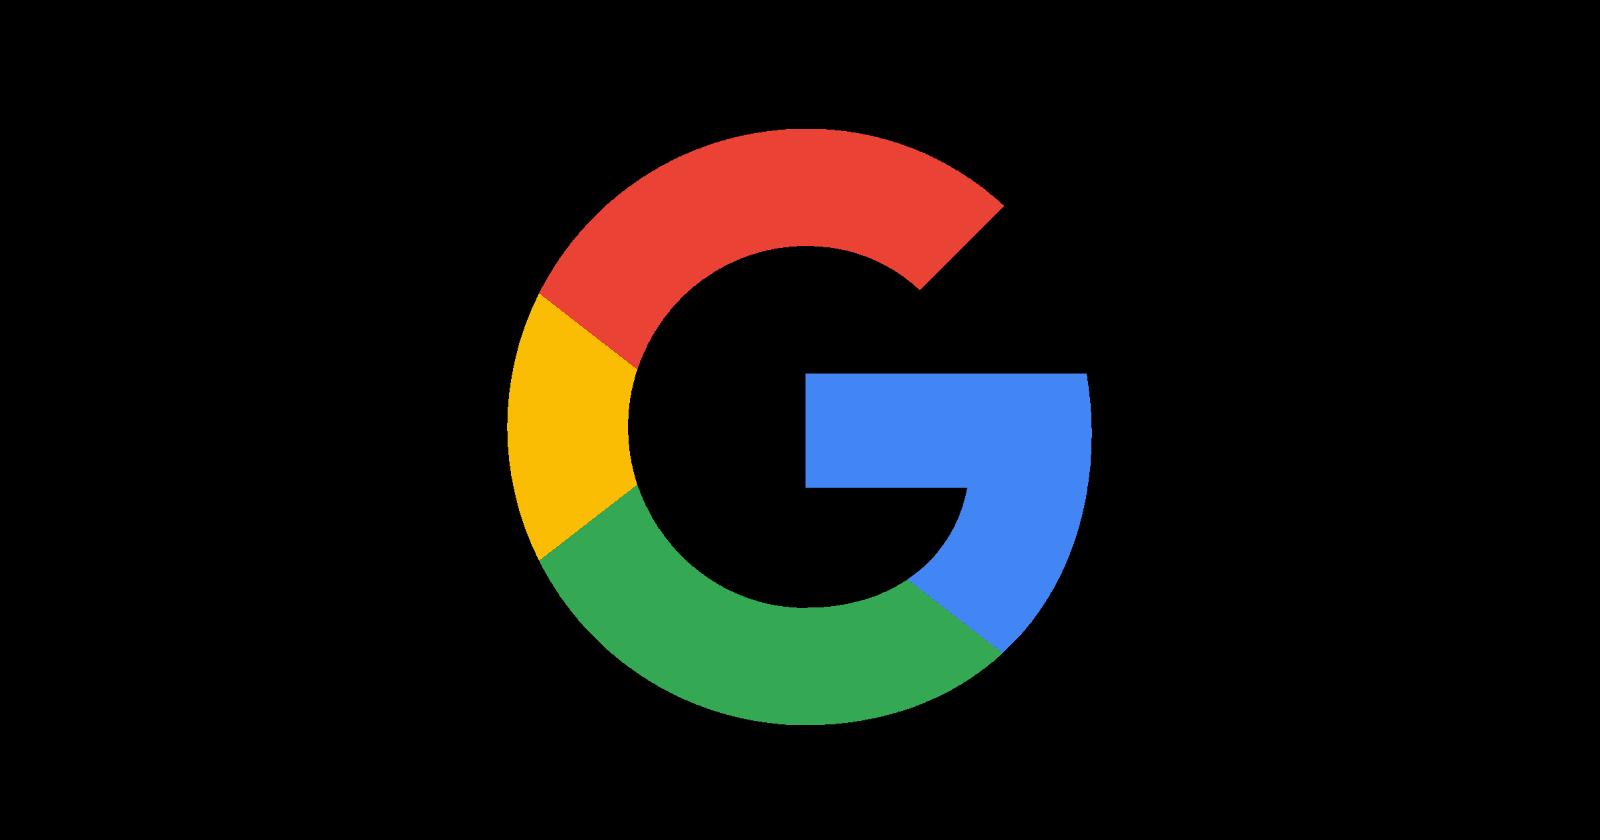 Image of Google's logo set against a black background